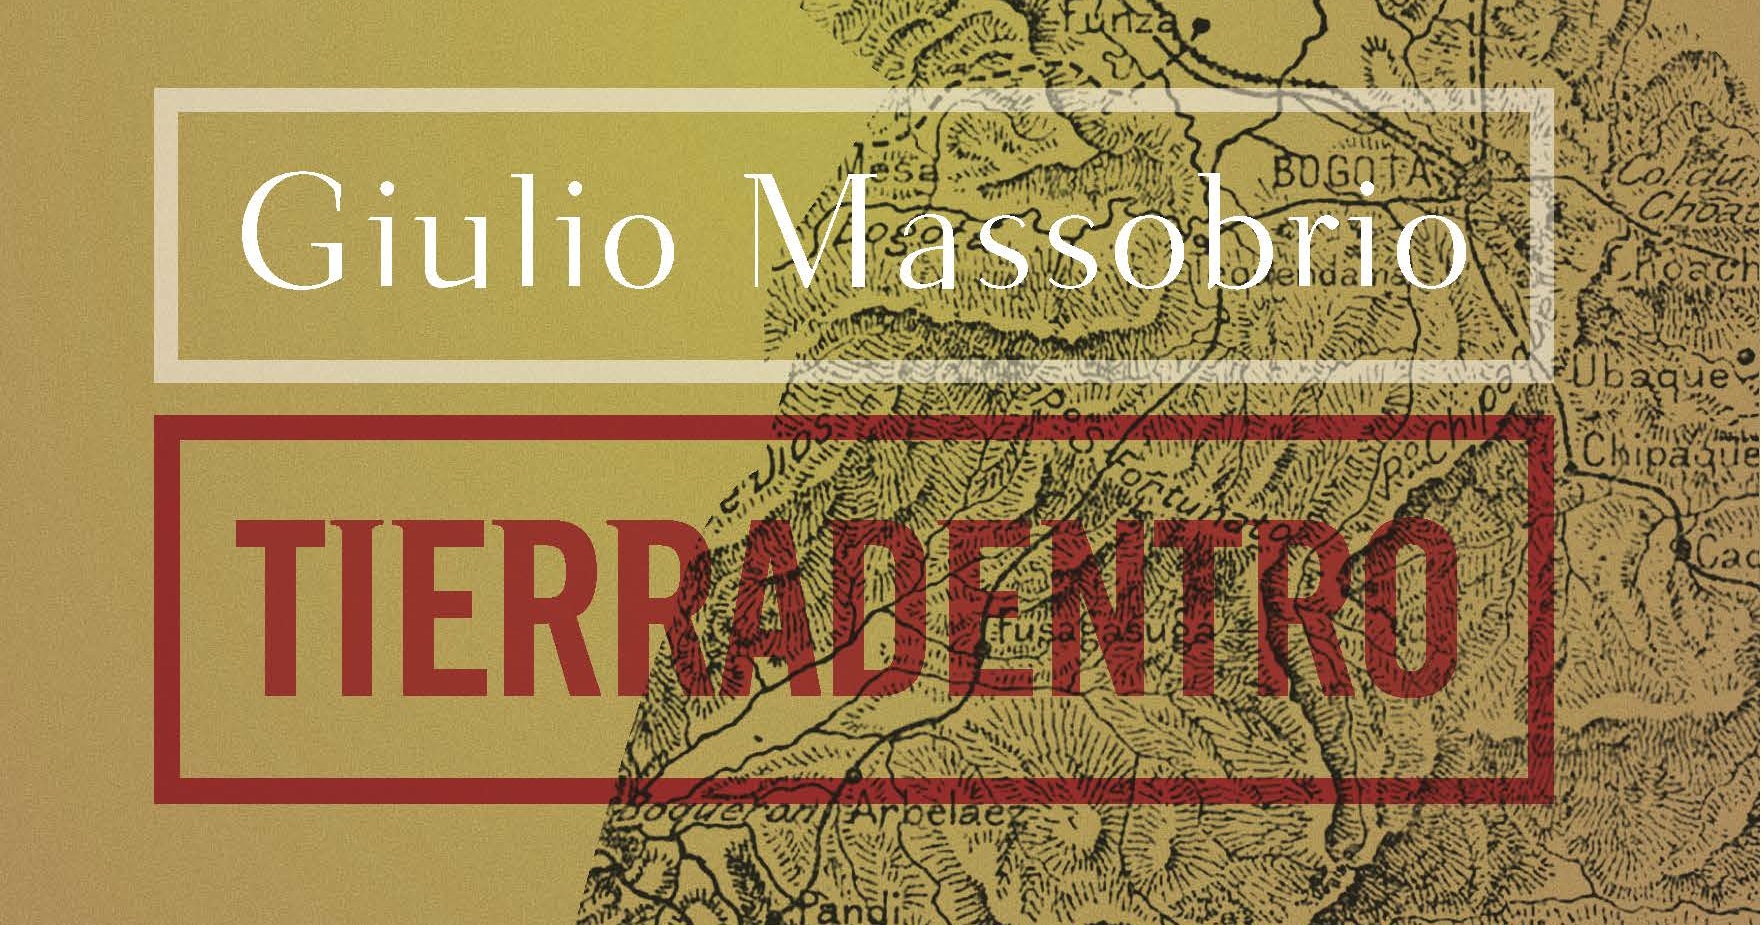 Agli Incontri d’autore Giulio Massobrio presenta “Tierradentro” [VIDEO]